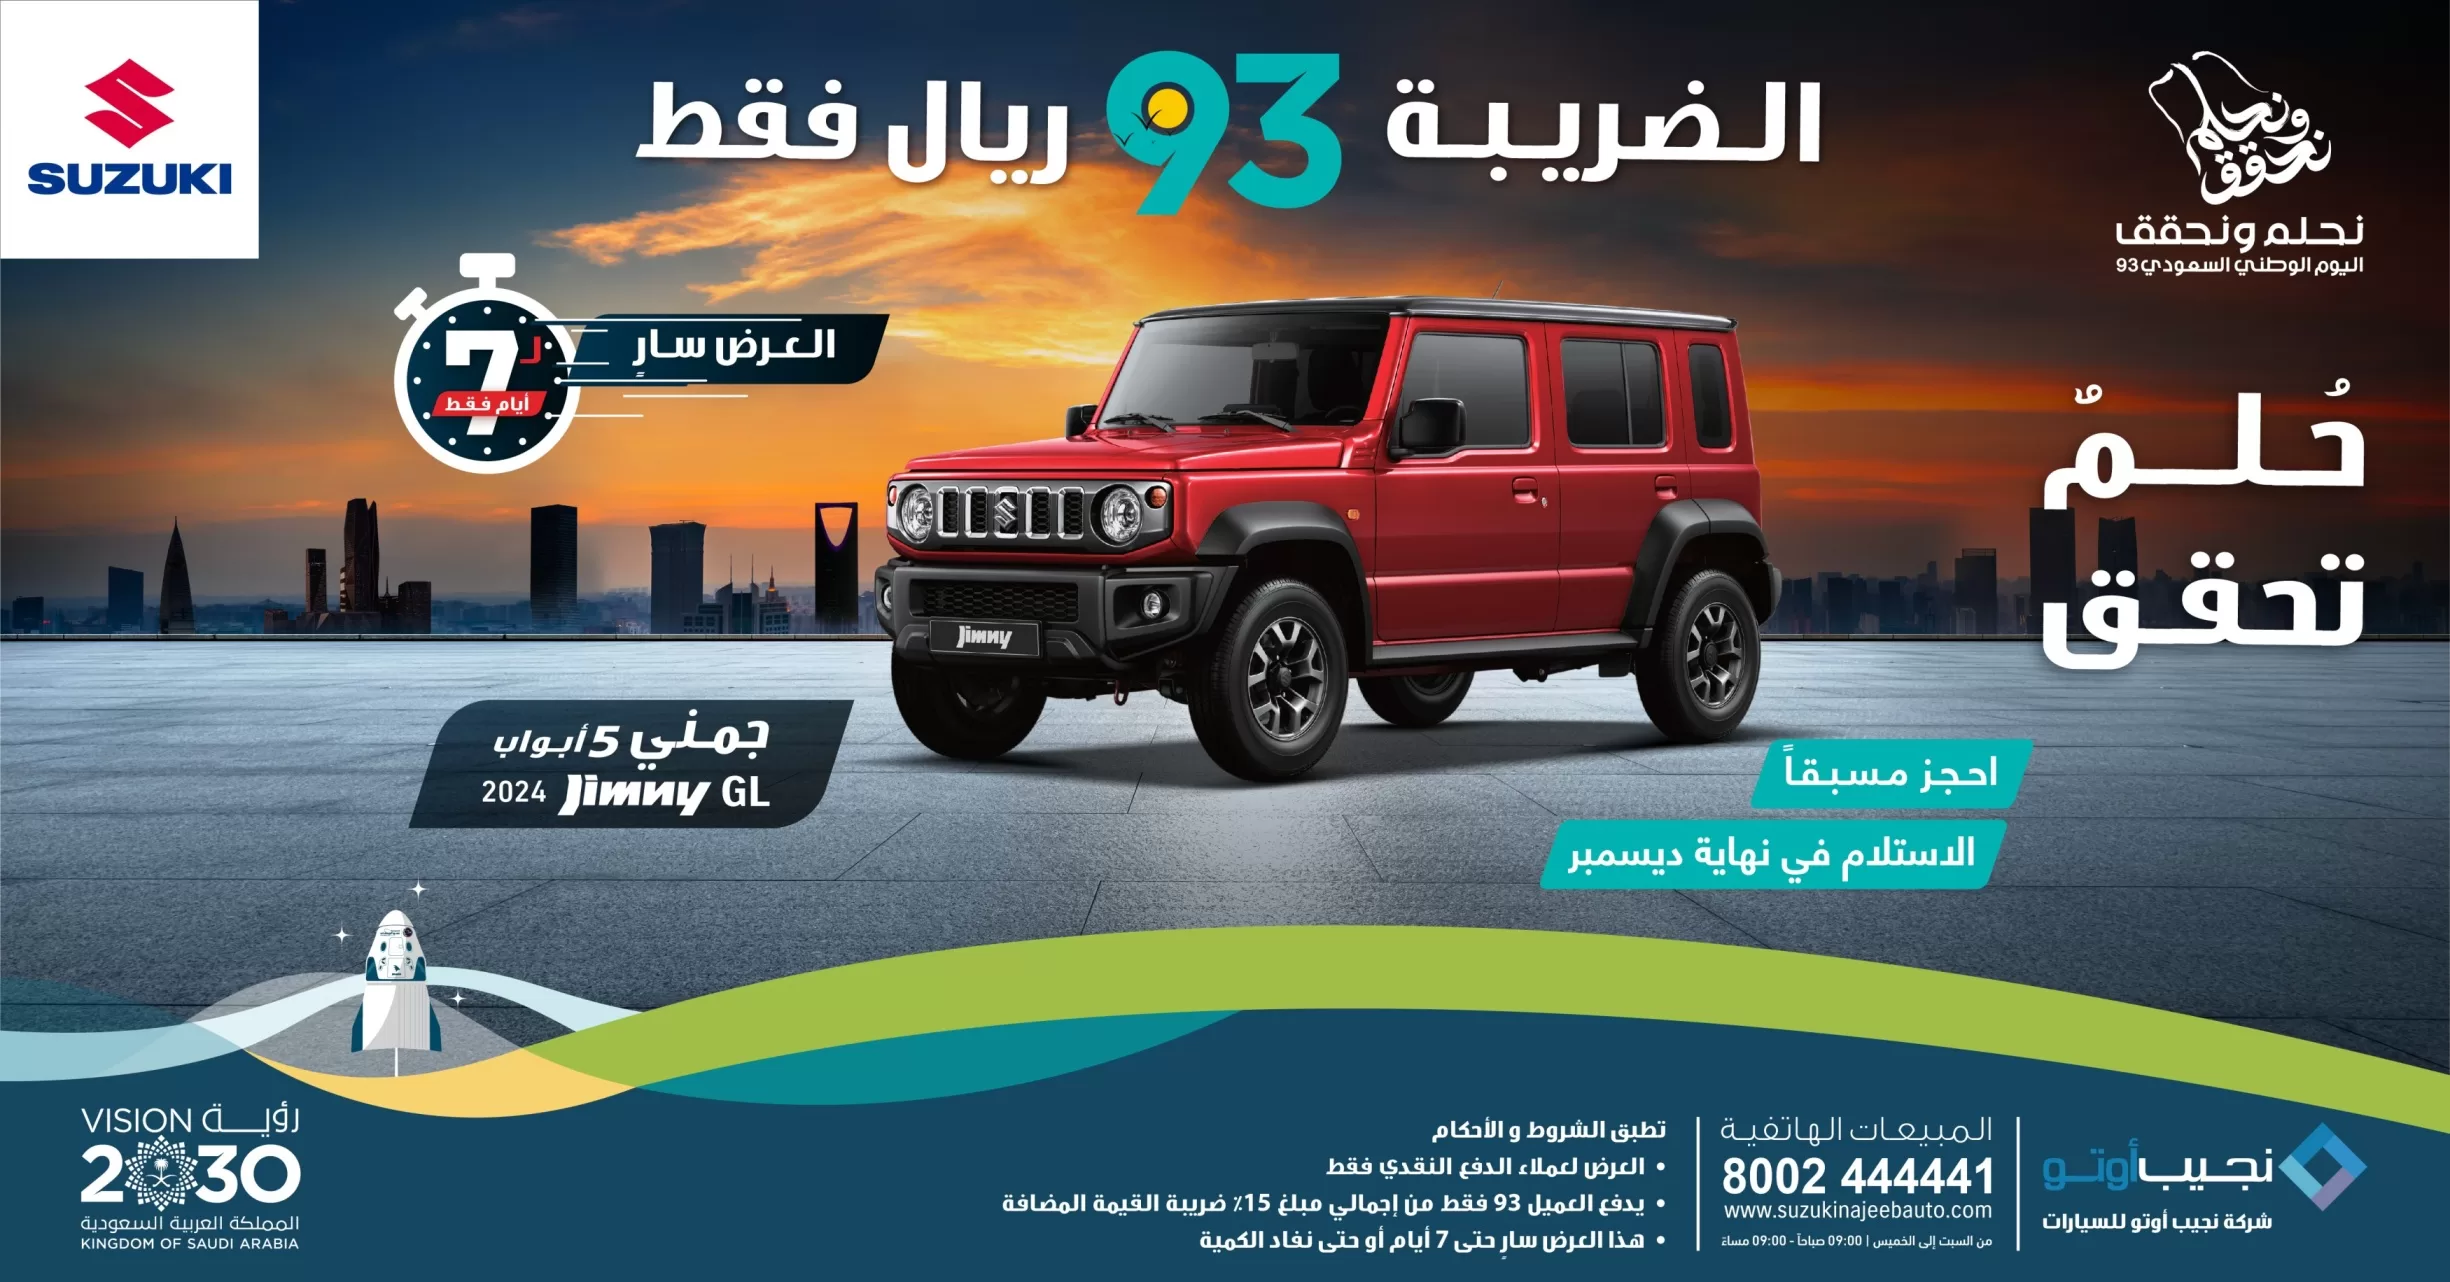 1501Desktop Image2 jpg - عروض نجيب أوتو لسيارات سوزوكي في اليوم الوطني السعودي: بضريبة 93 ريال فقط!